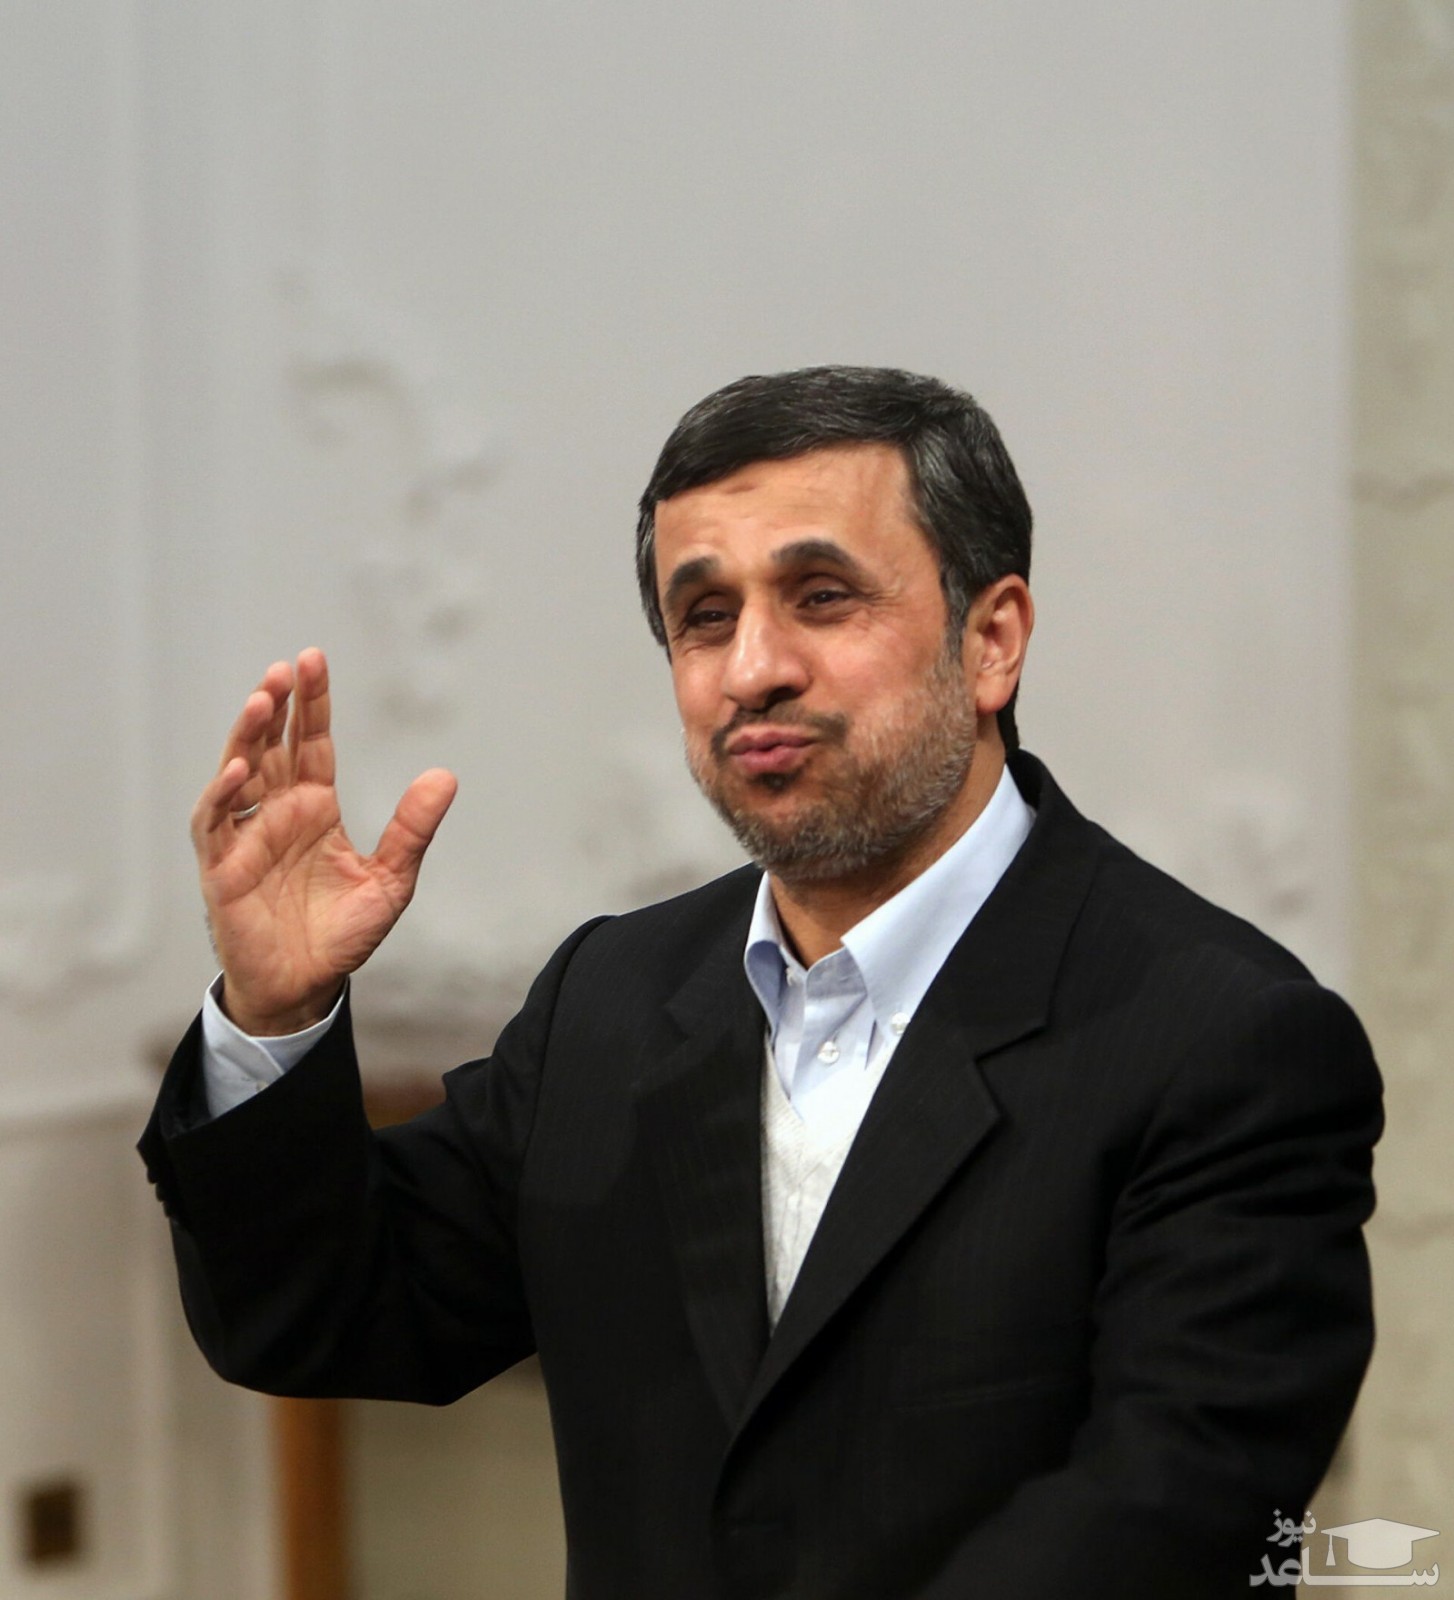 افشاگری درباره دفتر ۱۵۰۰ میلیارد تومانی احمدی نژاد در ولنجک